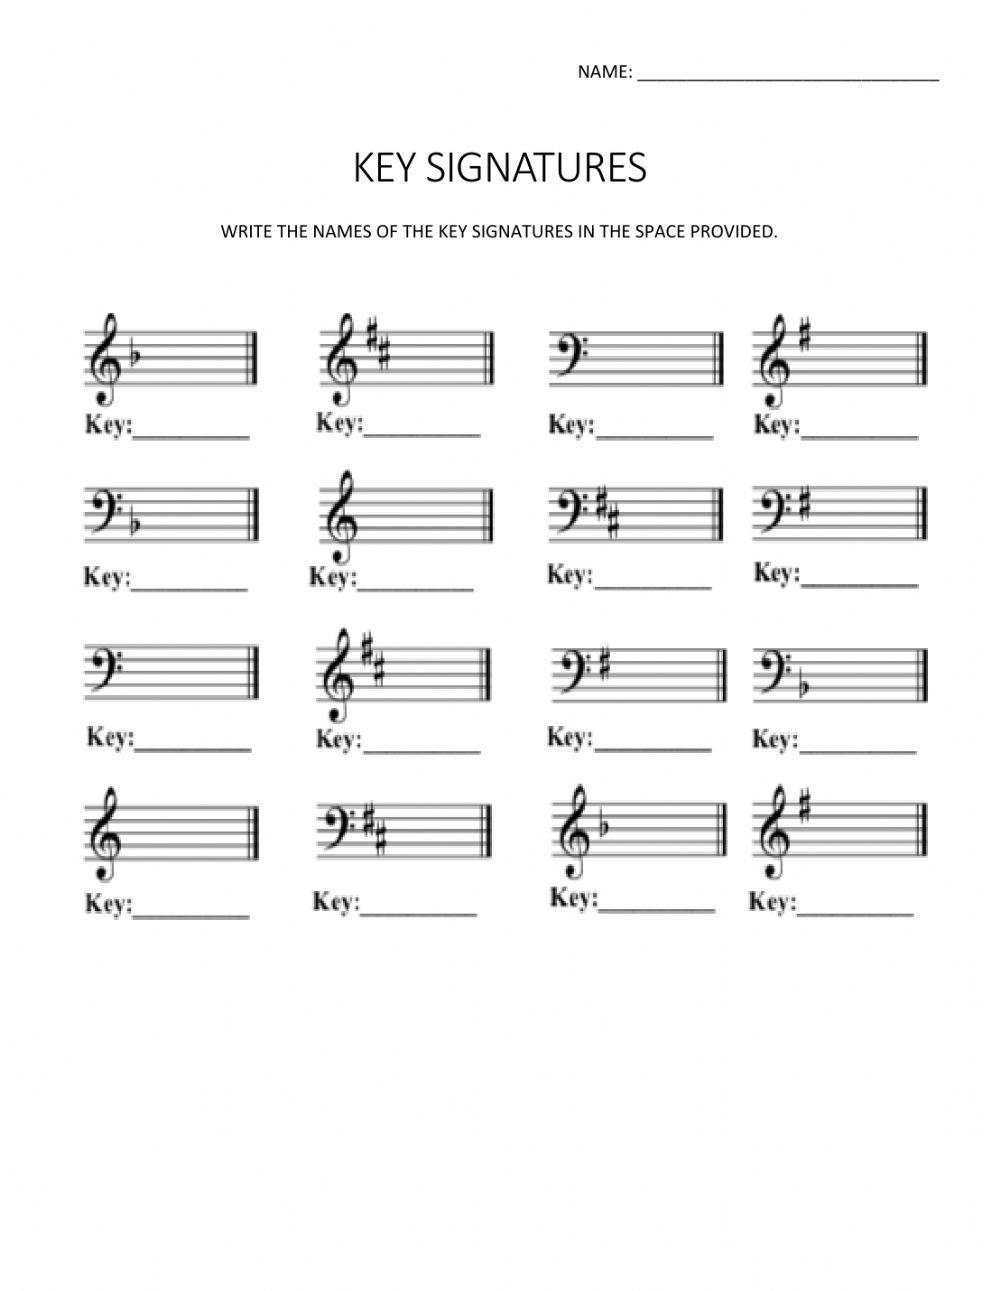 Key signatures c-f-g